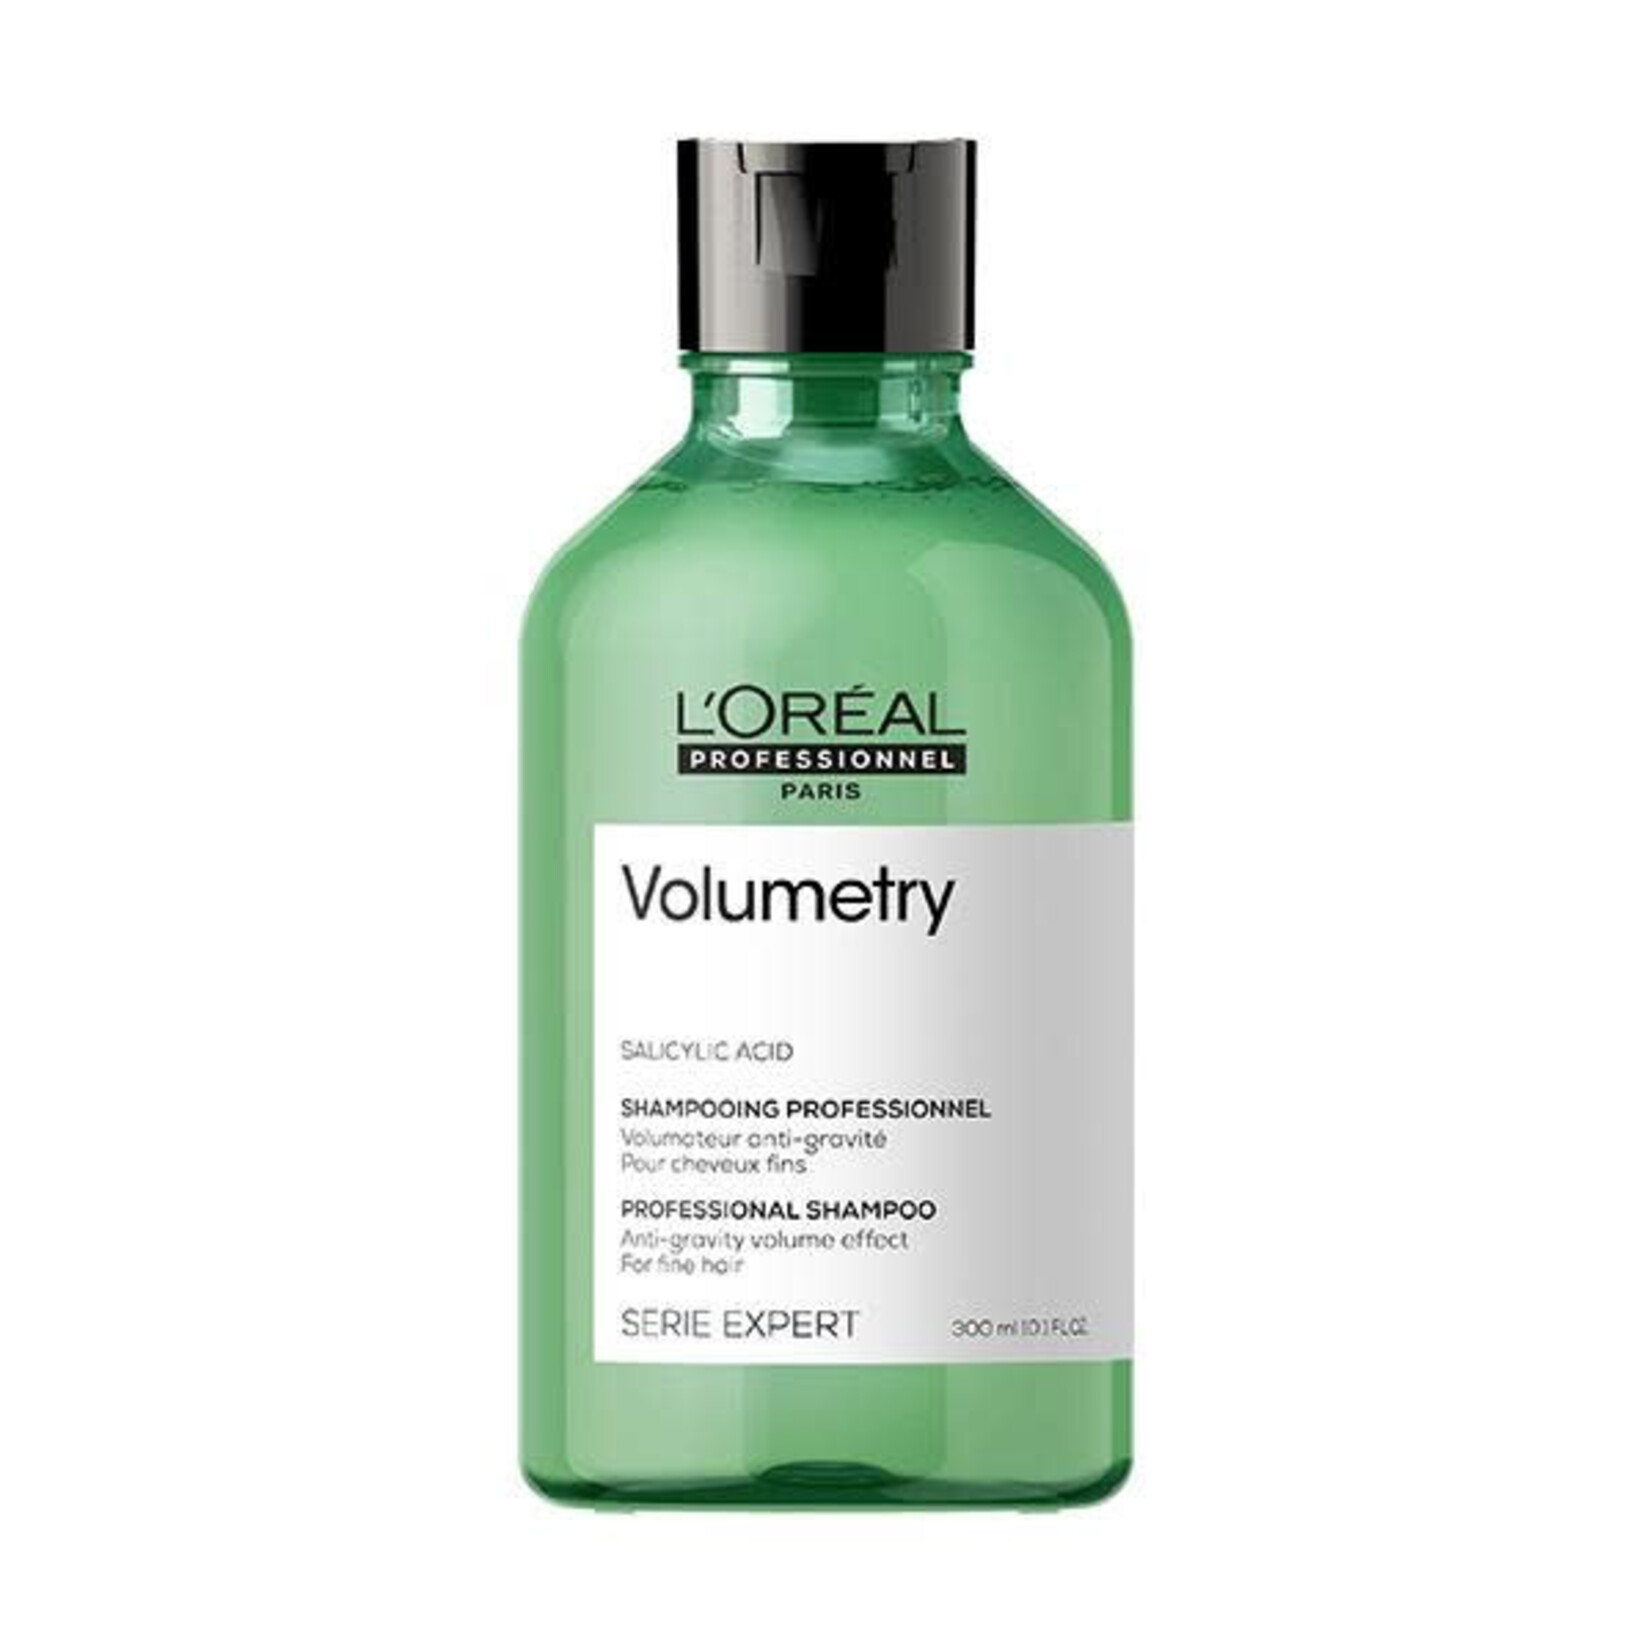 L'Oréal L'Oréal Professionnel - Volumetry - Shampoo 300ml